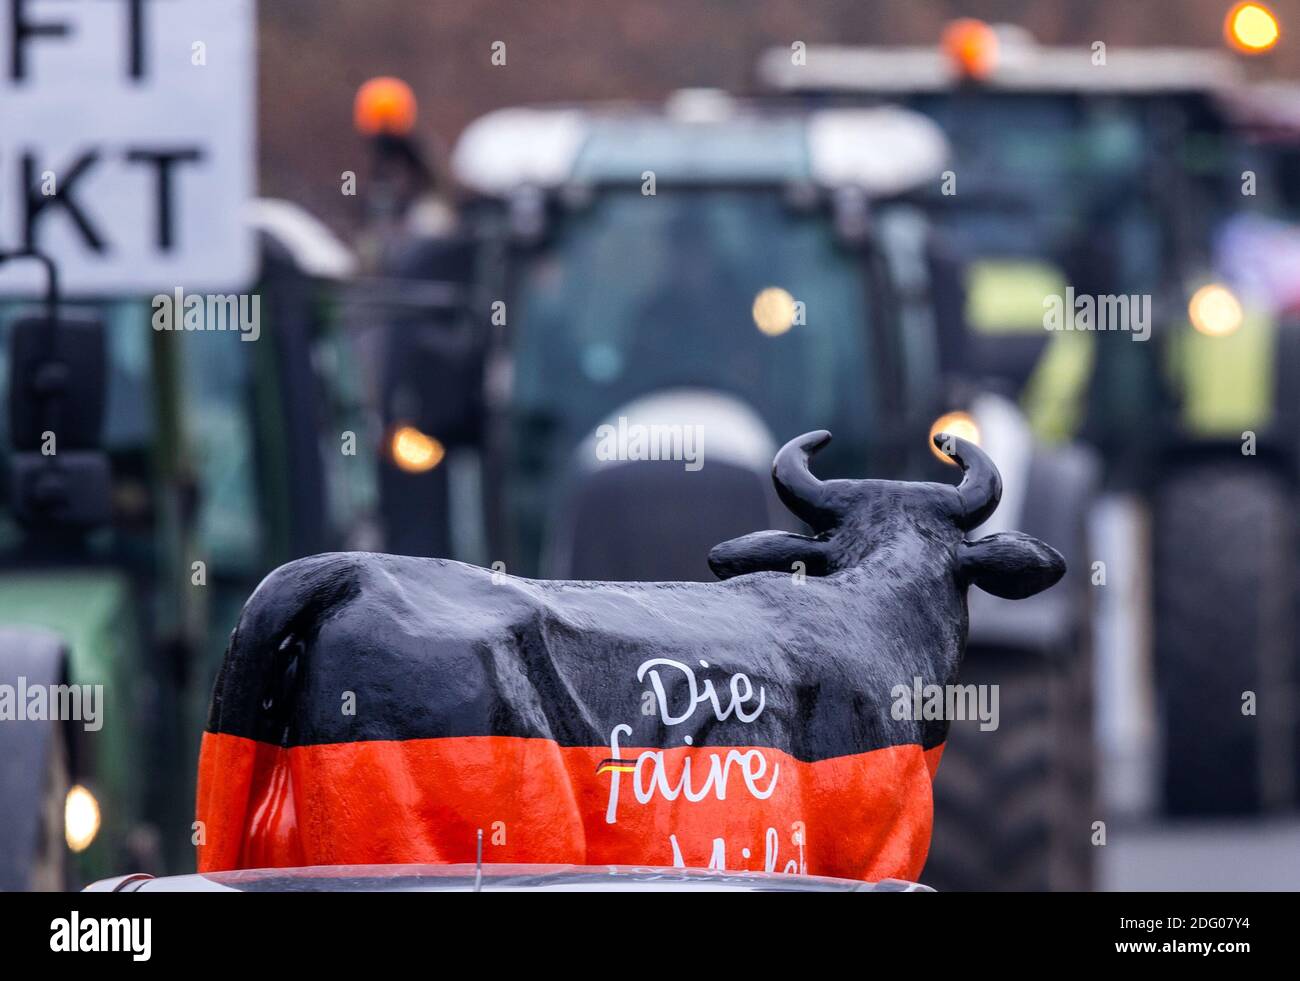 Upahl, Deutschland. Dezember 2020. Die Bauern versammeln sich vor der Molkerei Arla zu einer Protestaktion für höhere Milchpreise. Die Bauern in Mecklenburg-Vorpommern haben erneut Traktorenparaden zu mehreren Milch- und Fleischverarbeitern gestartet. Geplant sind Aktionen in Molkereien in Wismar, Upahl und Waren an der Müritz und vor dem größten Schlachthof im Nordosten. Quelle: Jens Büttner/dpa-Zentralbild/ZB/dpa/Alamy Live News Stockfoto